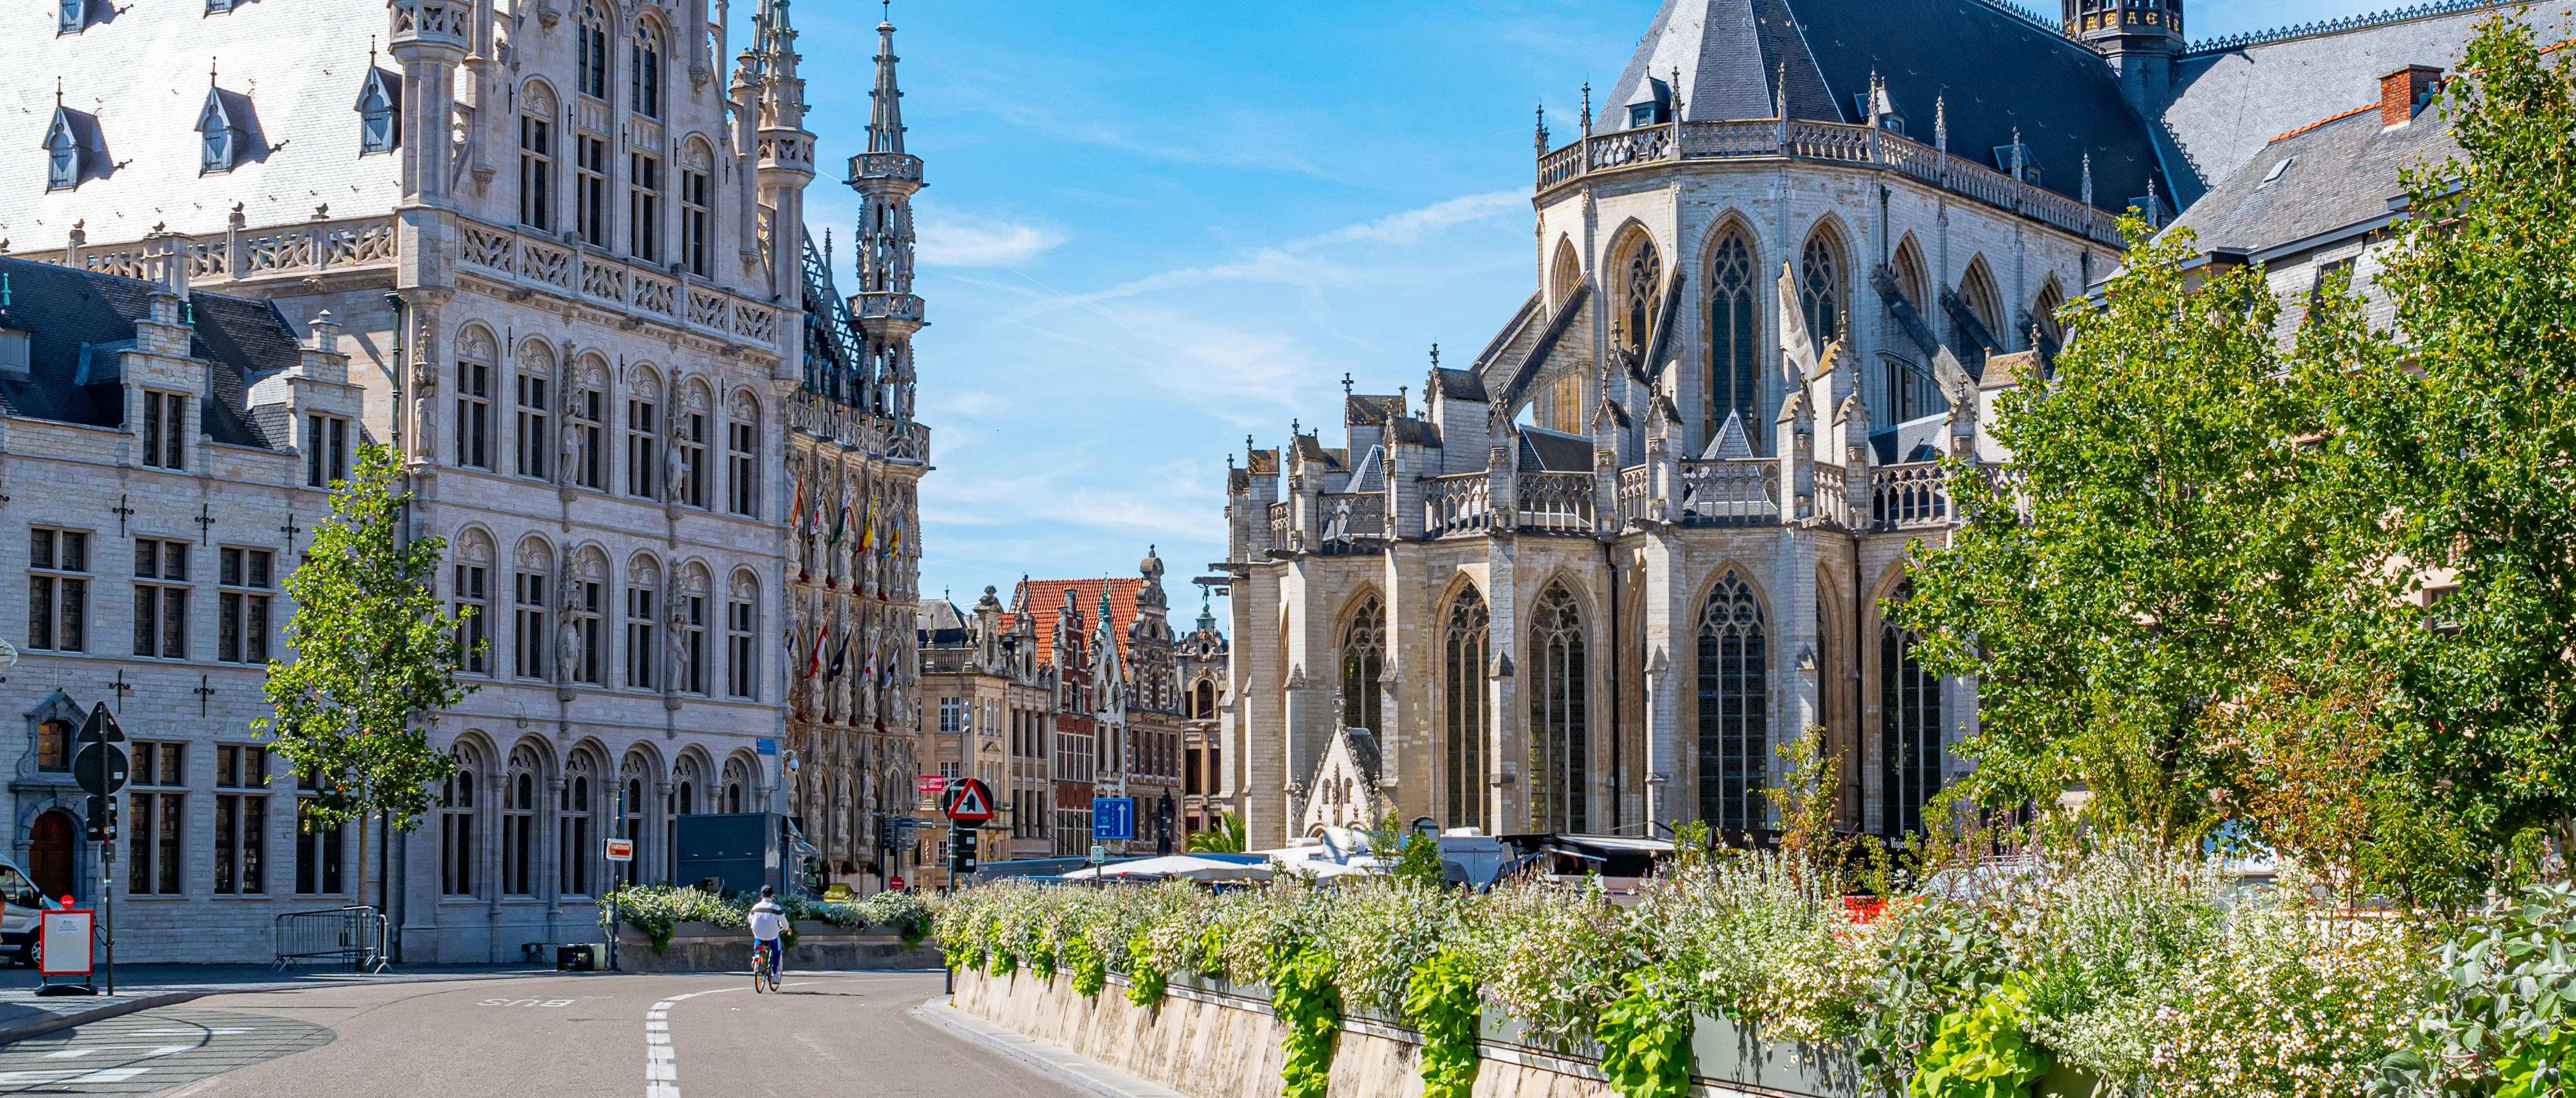 Smart wandeling in Leuven met een interactief stadsspel